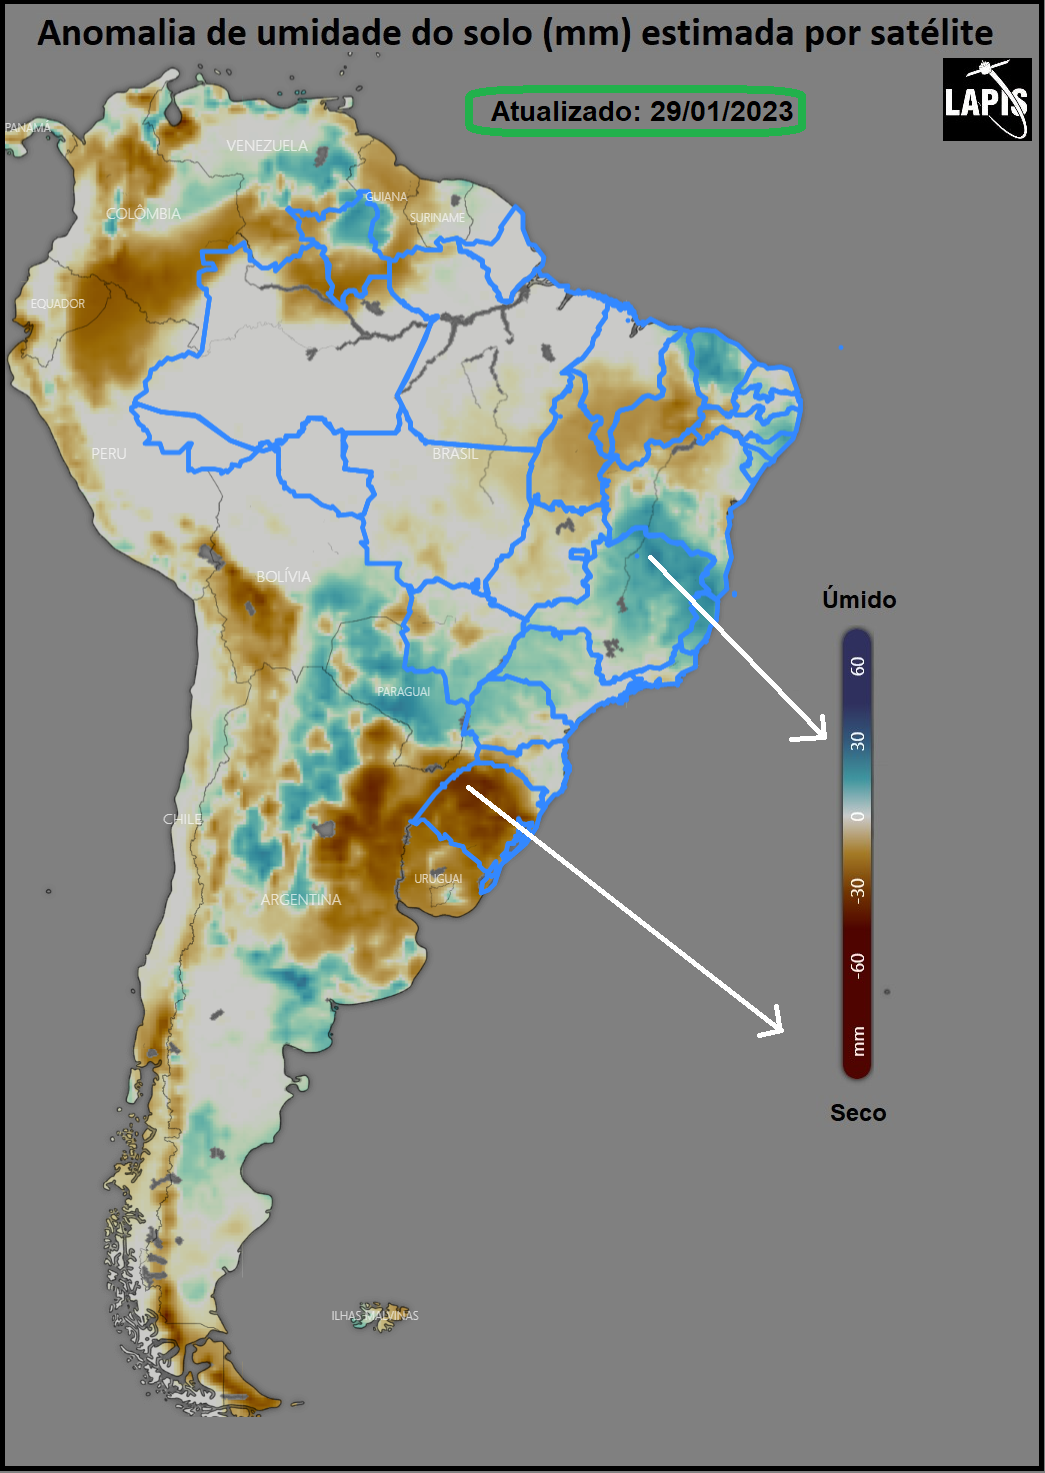 Mapa da umidade do solo, processado no QGIS.